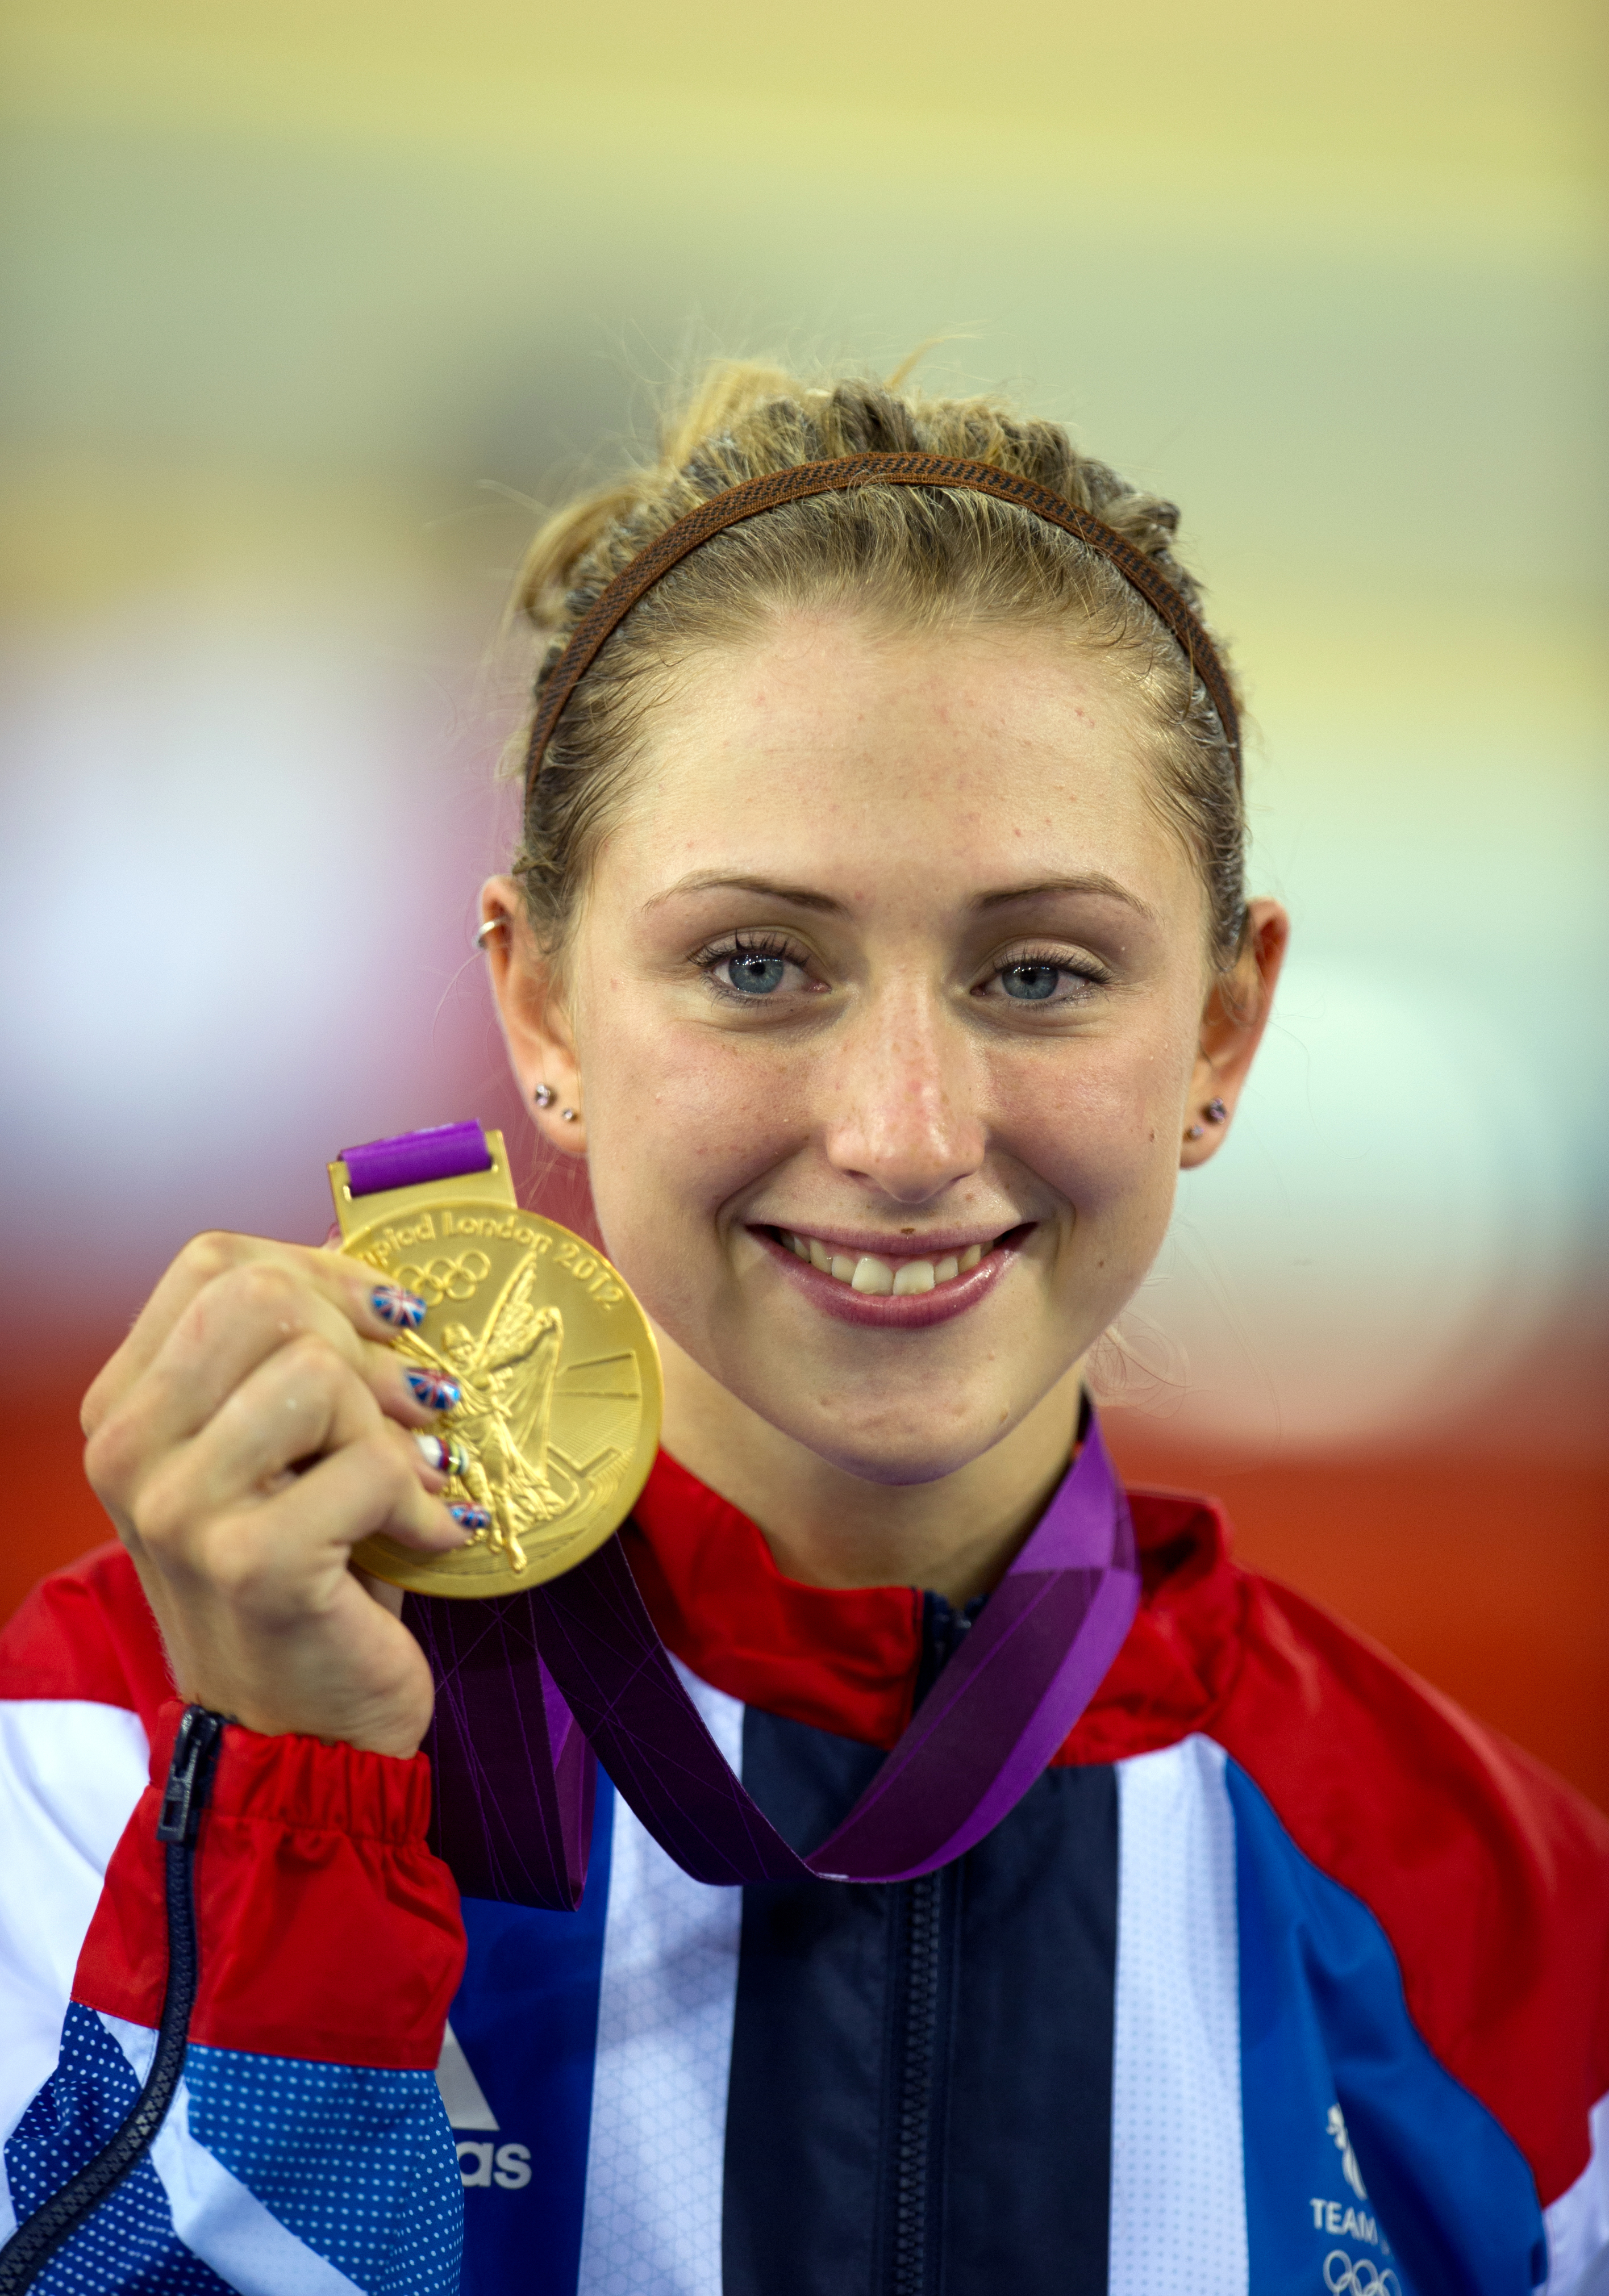 Laura gewann 2012 in London die erste ihrer fünf olympischen Goldmedaillen